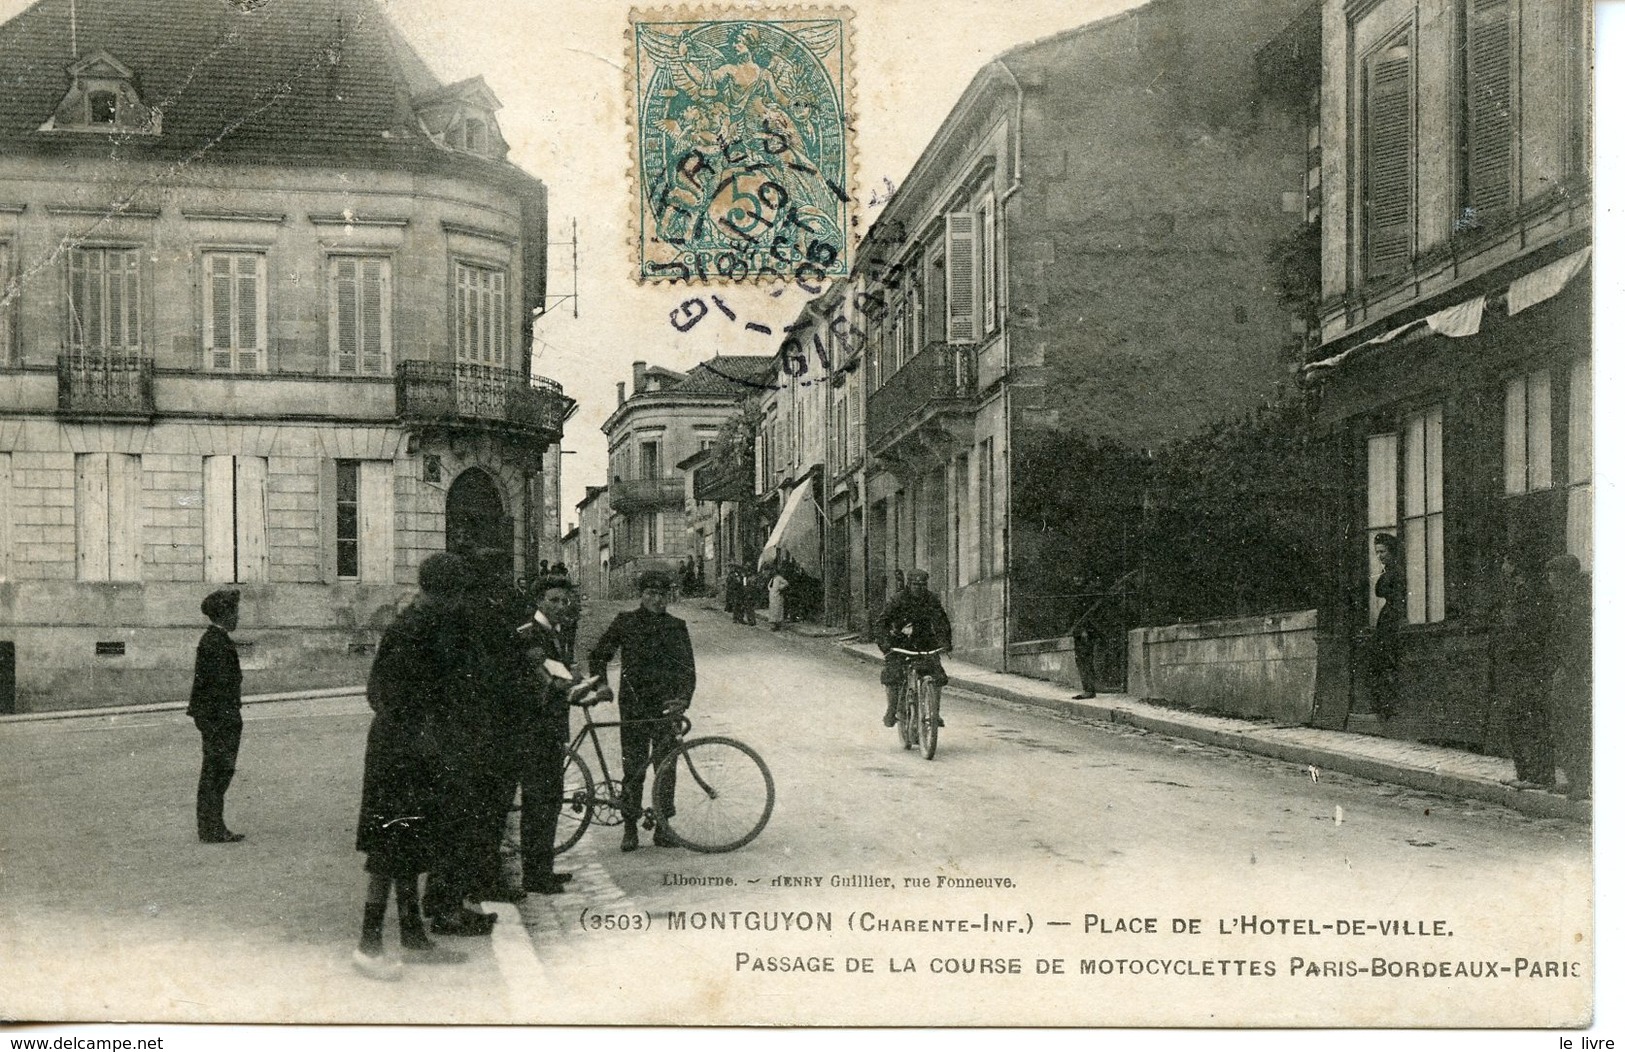 CPA 17 MONTGUYON. PLACE HOTEL DE VILLE. PASSAGE DE LA COURSE DE MOTOCYCLETTES PARIS-BORDEAUX-PARIS 1905